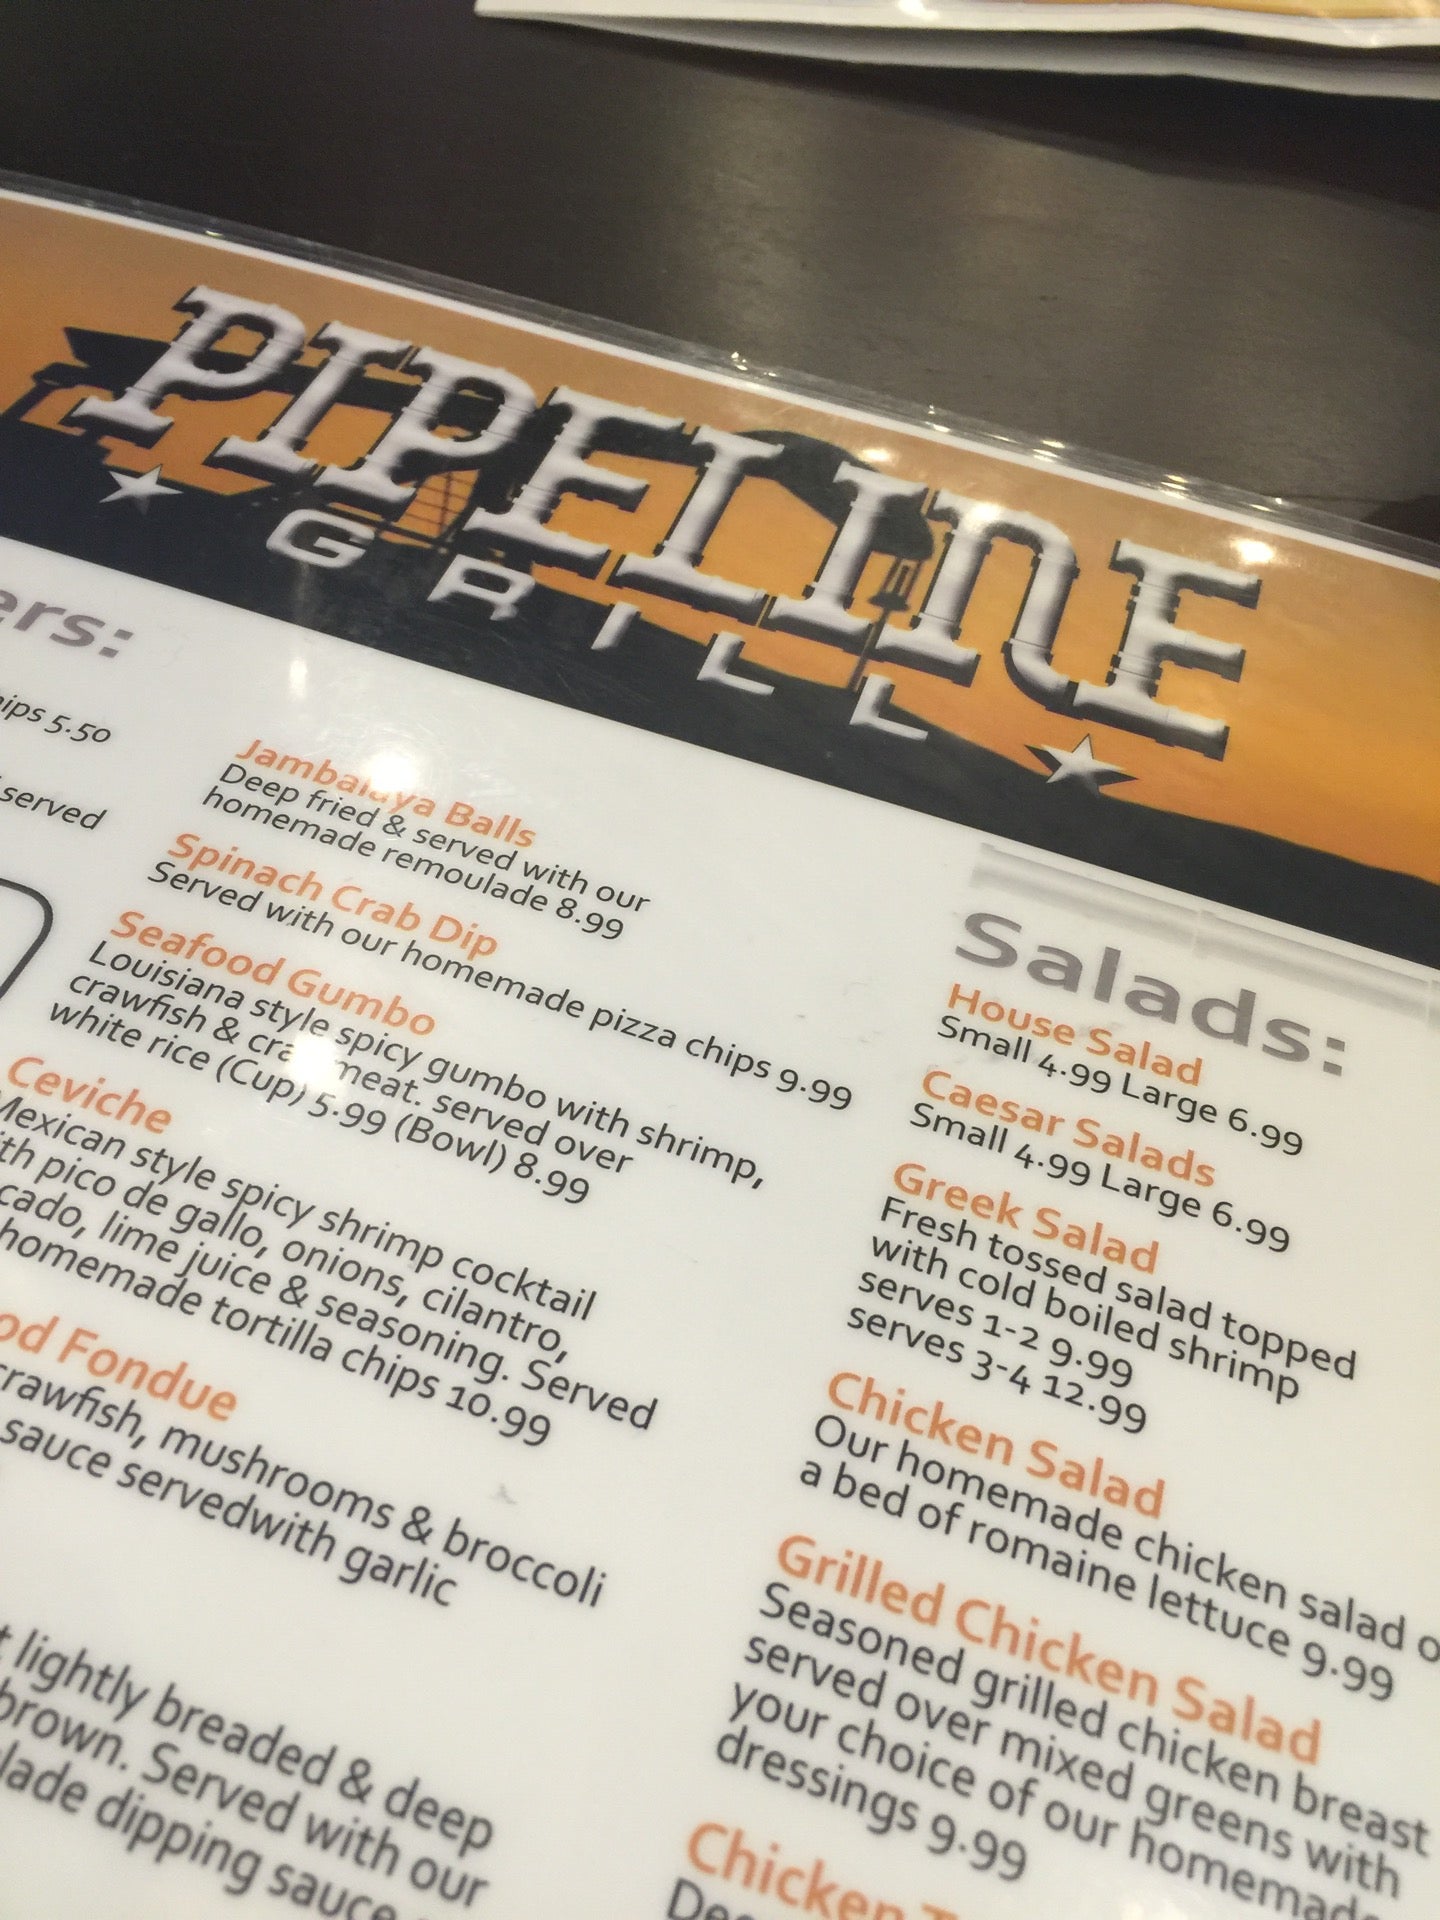 Pipeline grill menu